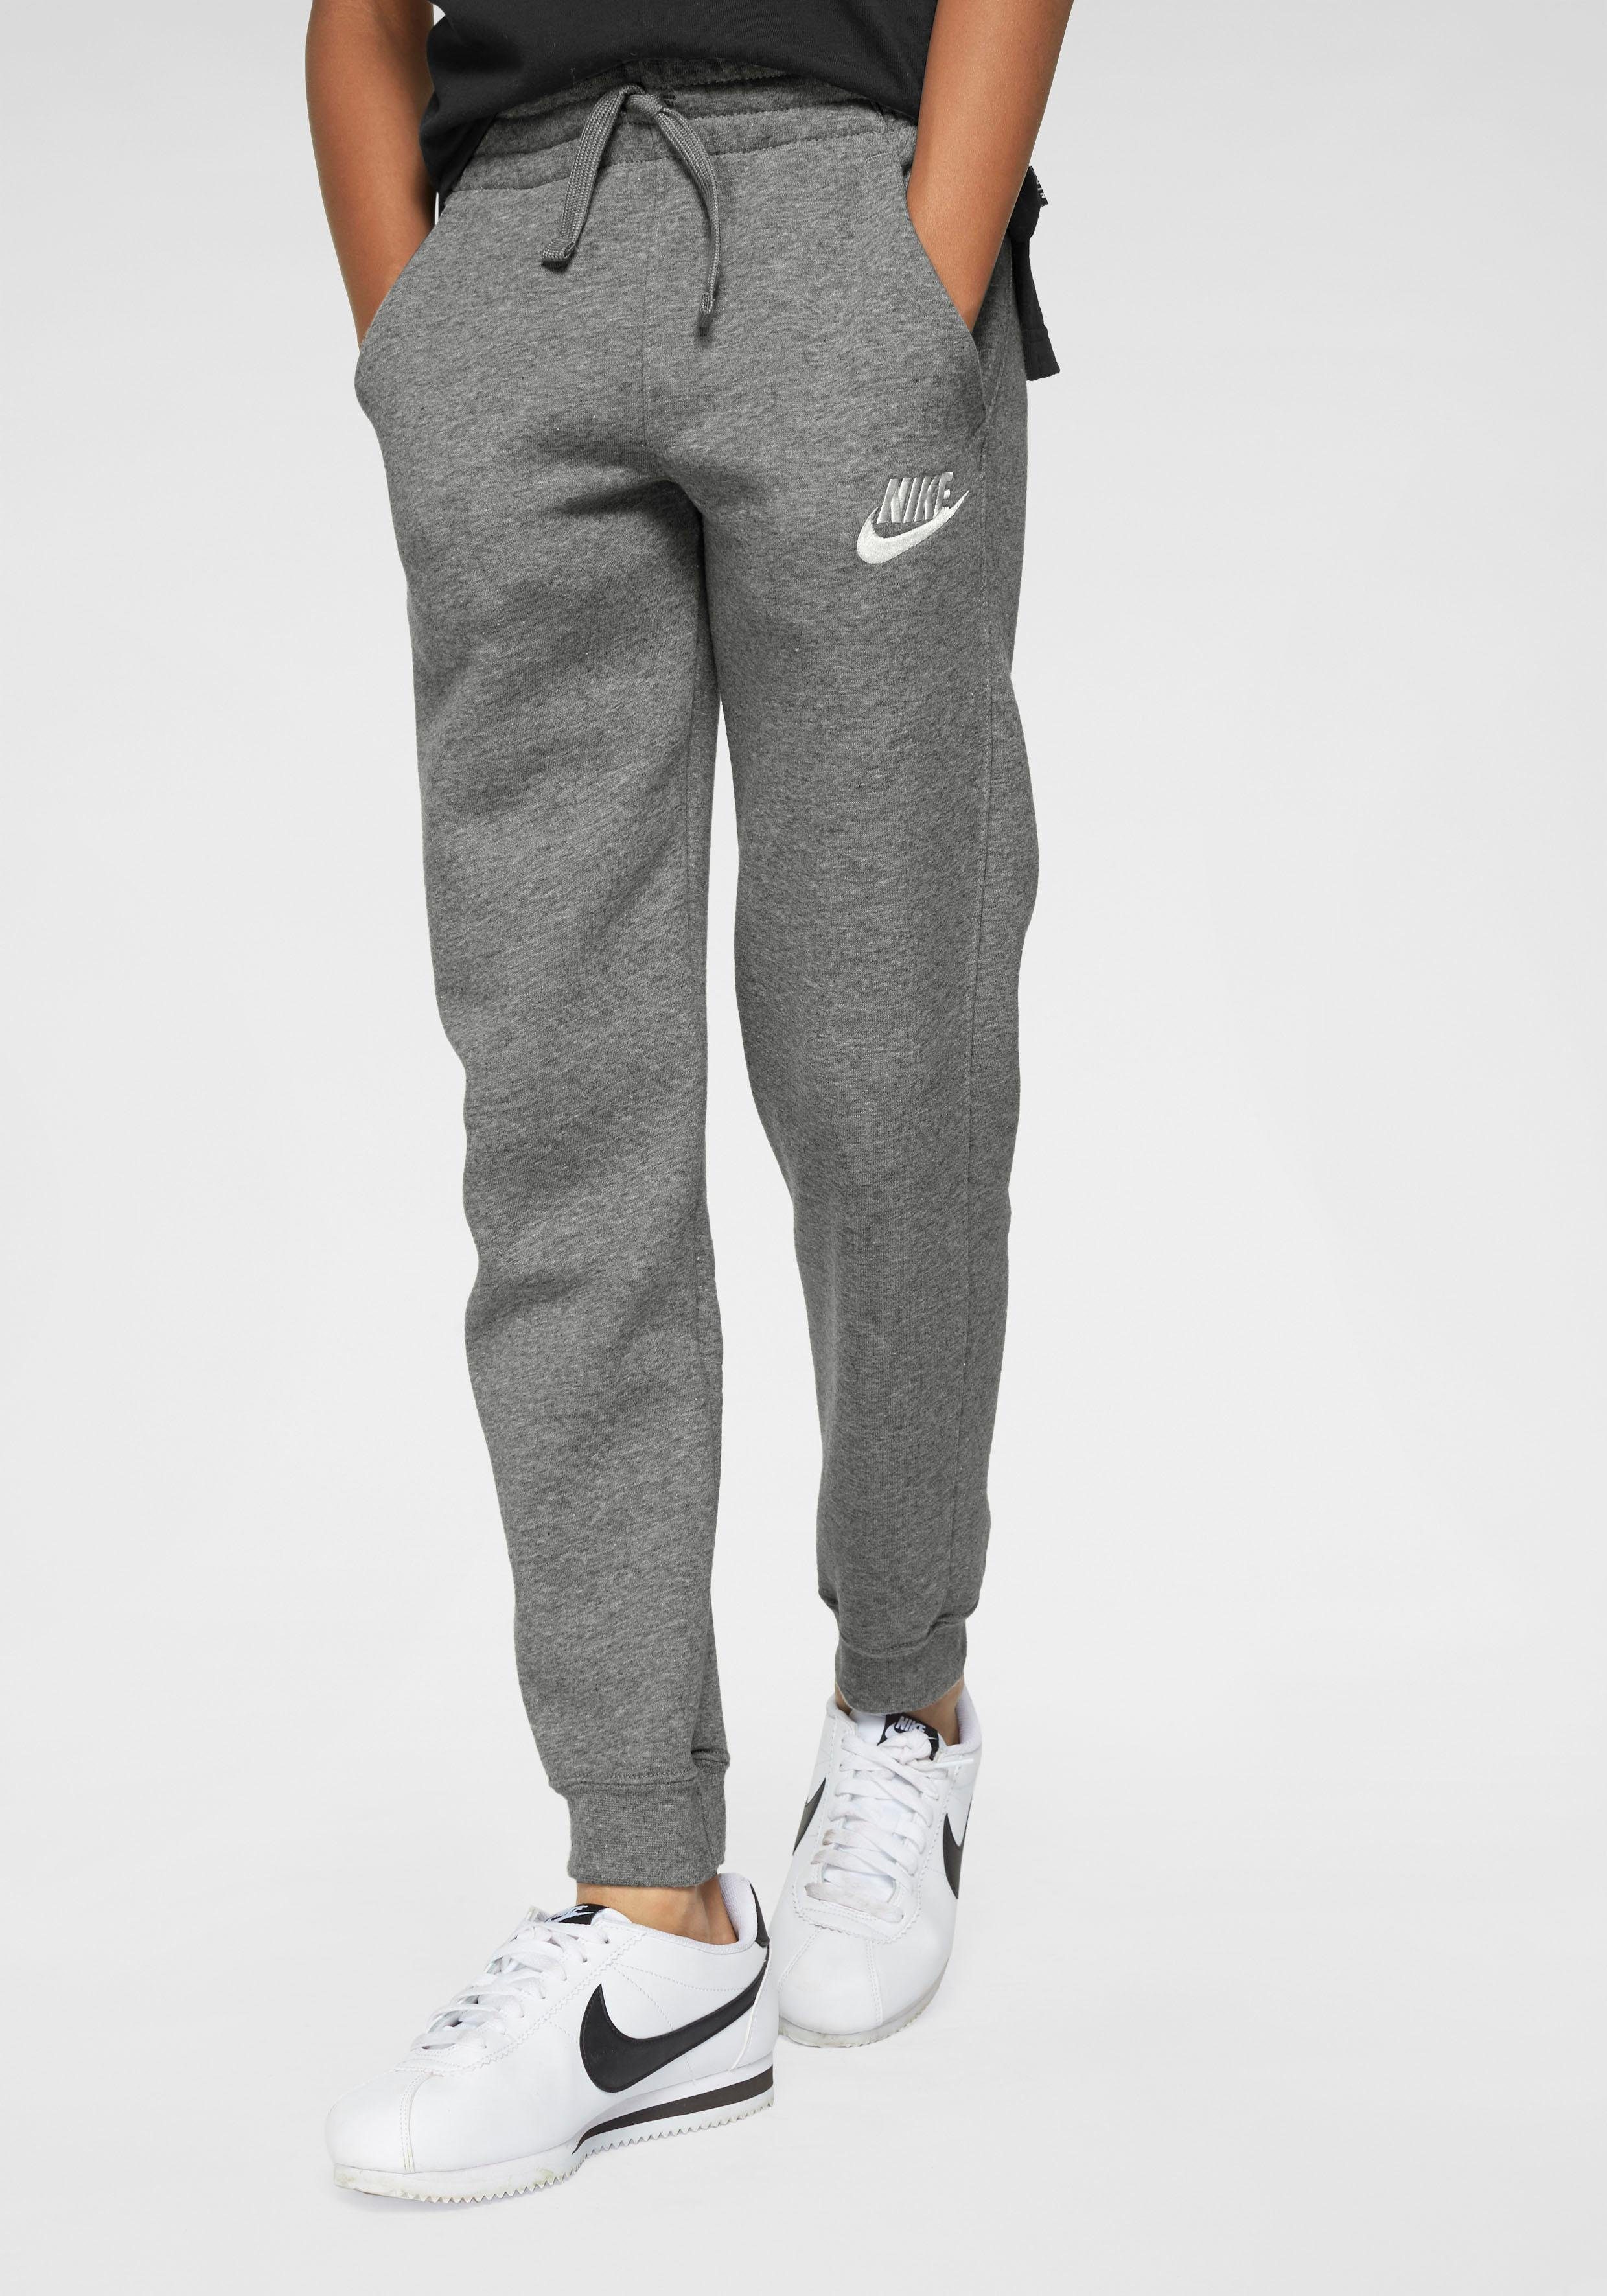 JOGGER Sportswear FLEECE CLUB Jogginghose B grau-meliert PANT NSW Nike